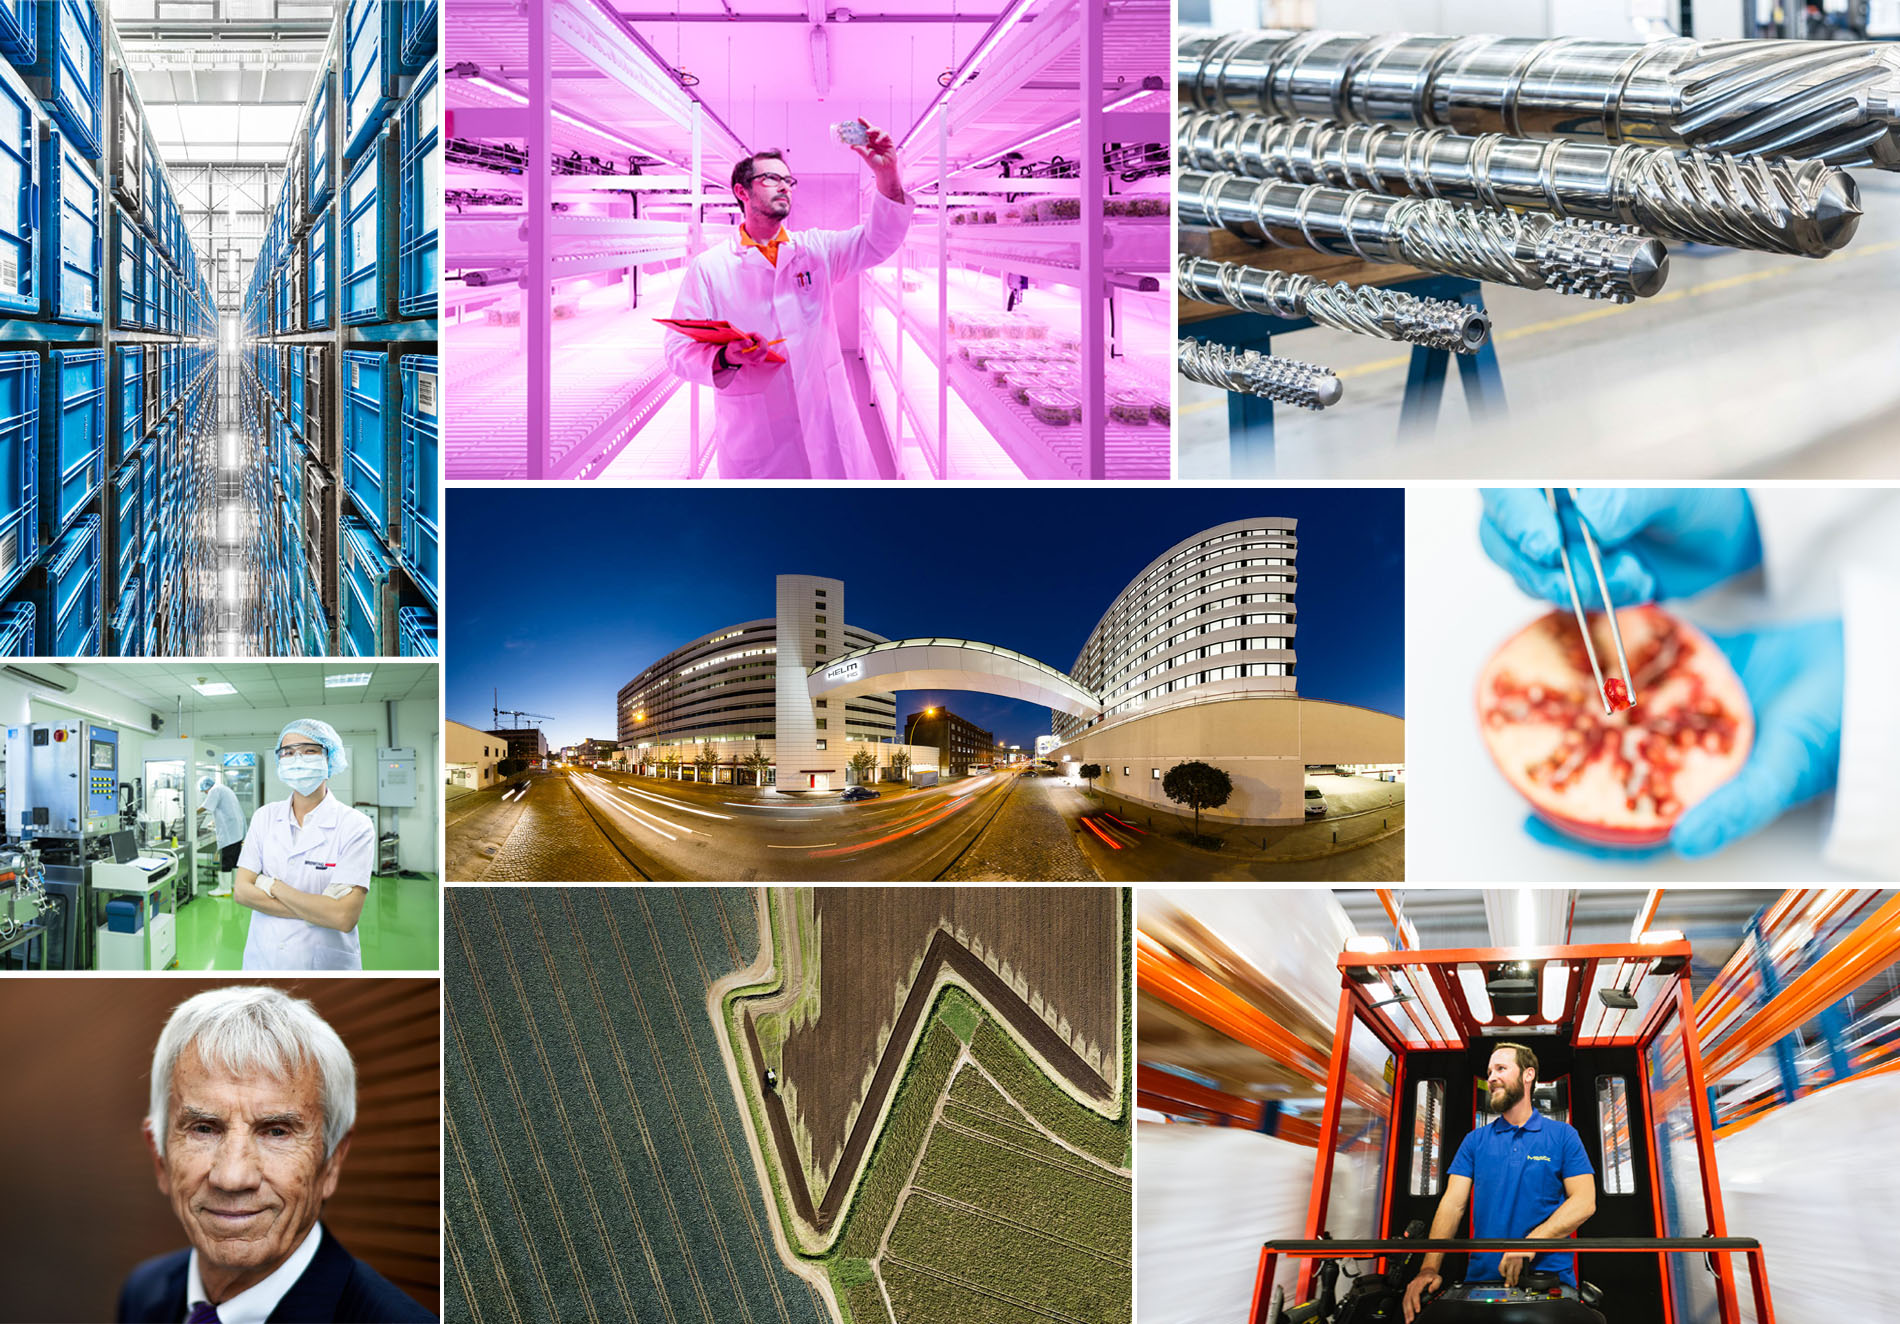 EXPOSE Experten für Corporate: Bildprofuktion mit 360° Industrie-Panoramen, Airshots, Videos, Industrie-Architektu. Virtuelle Rundgänge